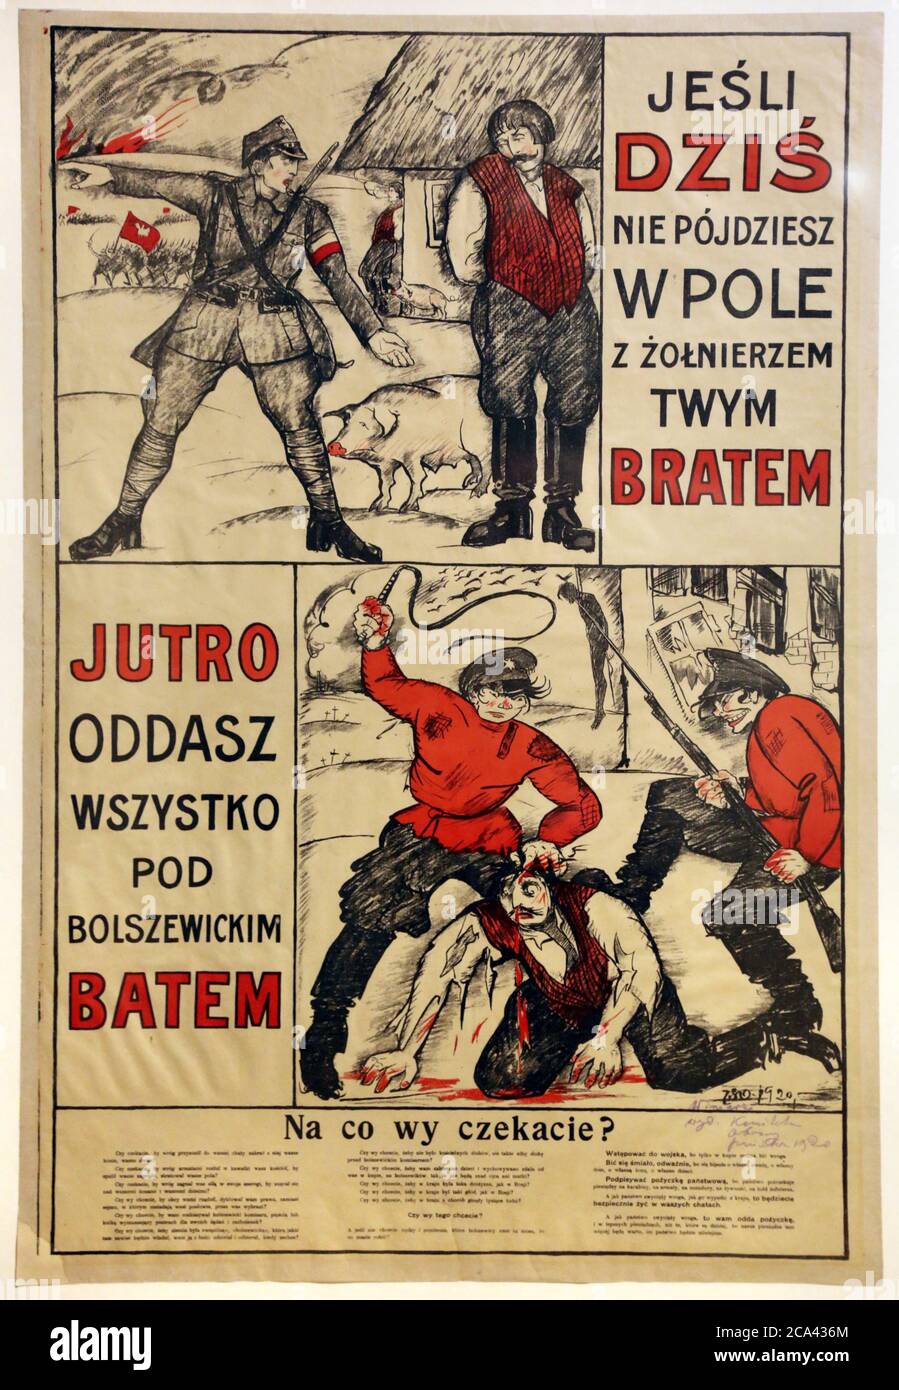 L'affiche de propagande de guerre entre la Pologne et l'Union soviétique de 1920. Affiche anticommuniste polonaise. Artiste Jerzy Winiarz. Banque D'Images